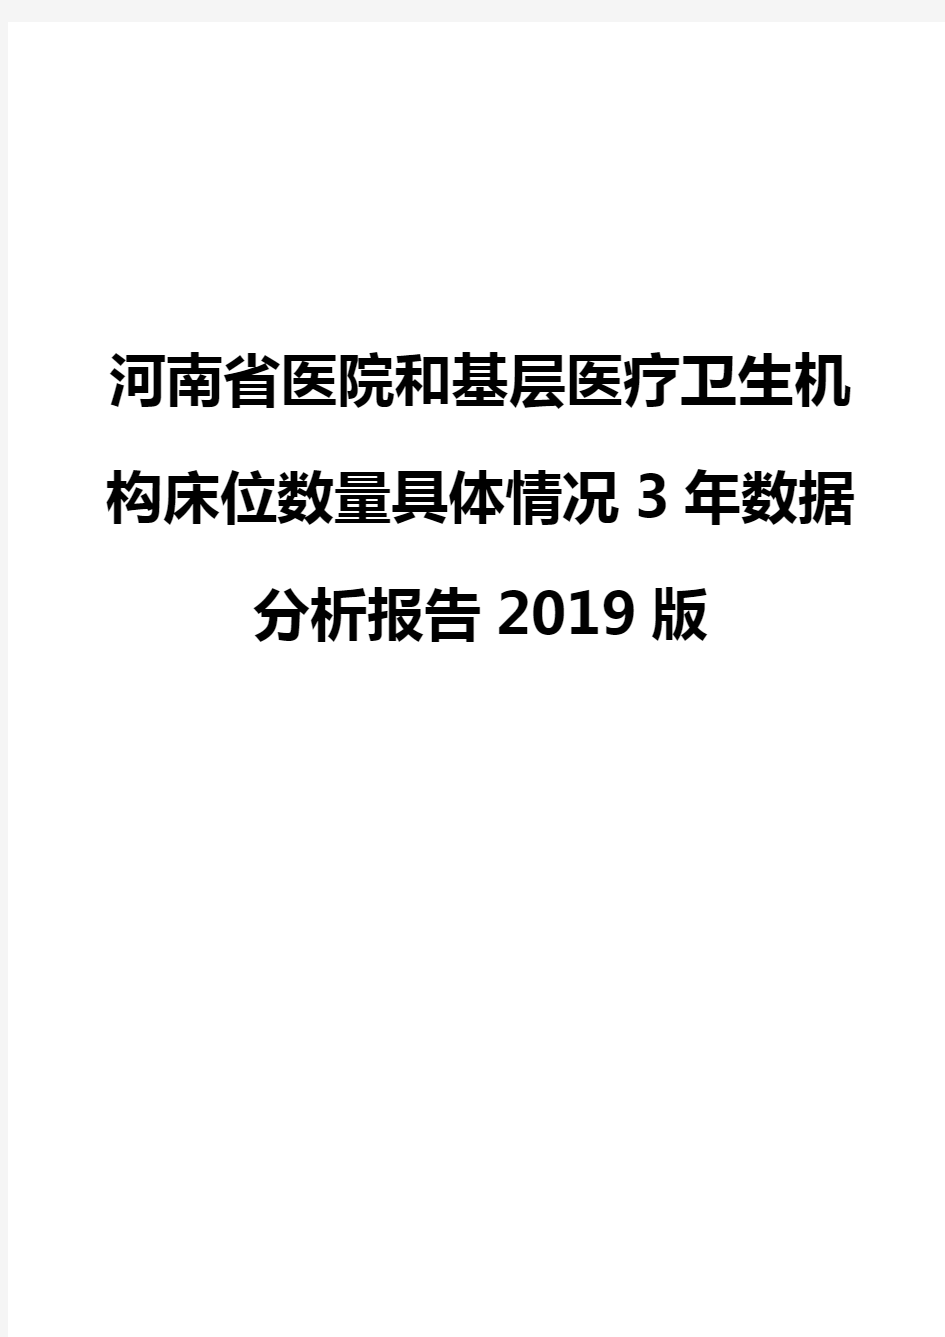 河南省医院和基层医疗卫生机构床位数量具体情况3年数据分析报告2019版